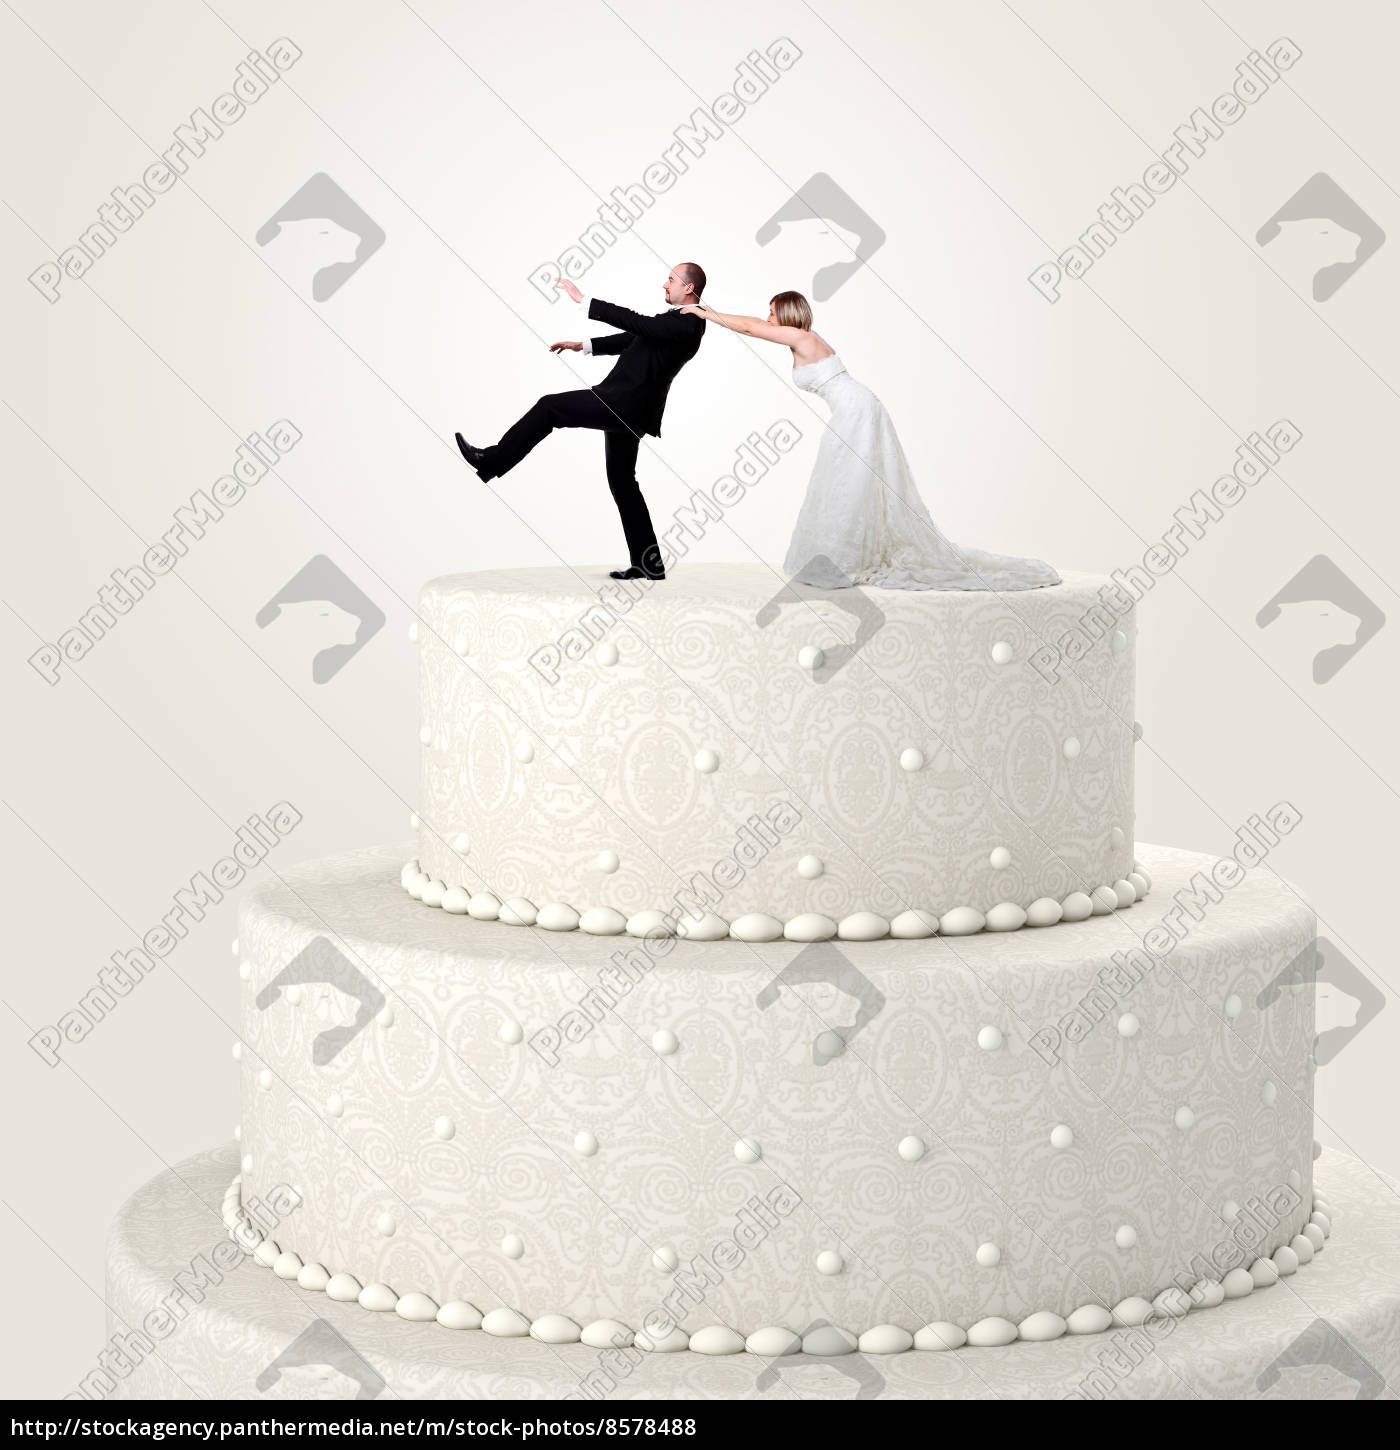 Bolo De Casamento - Jogo Acabado Foto de Stock - Imagem de adversidade,  conter: 179854596